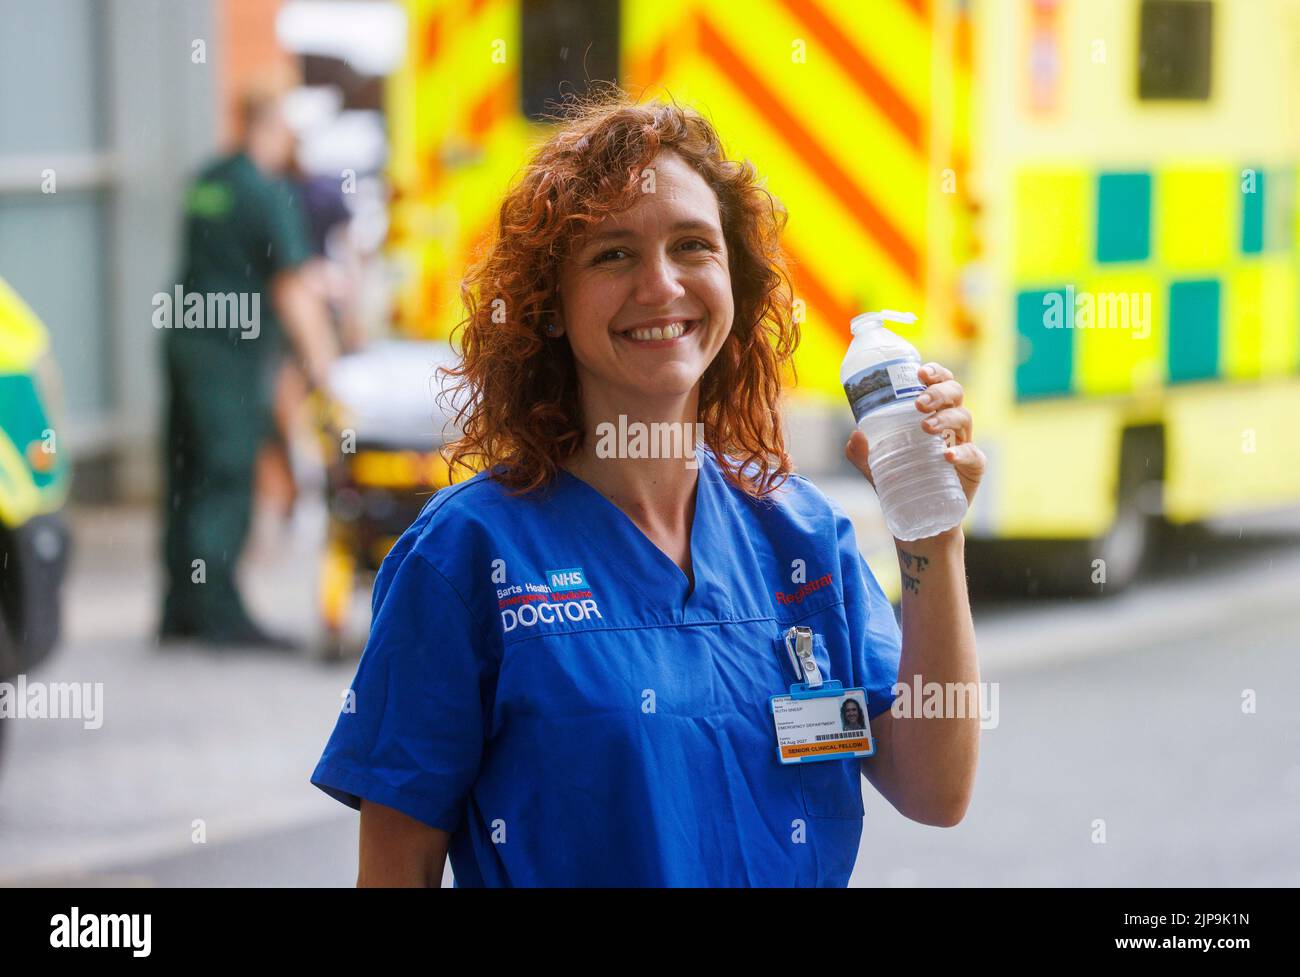 Un médico del NHS se refresca con una bebida de agua durante un descanso en un hospital de Londres. El NHS está bajo presión con la falta de fondos y la presión laboral. Foto de stock